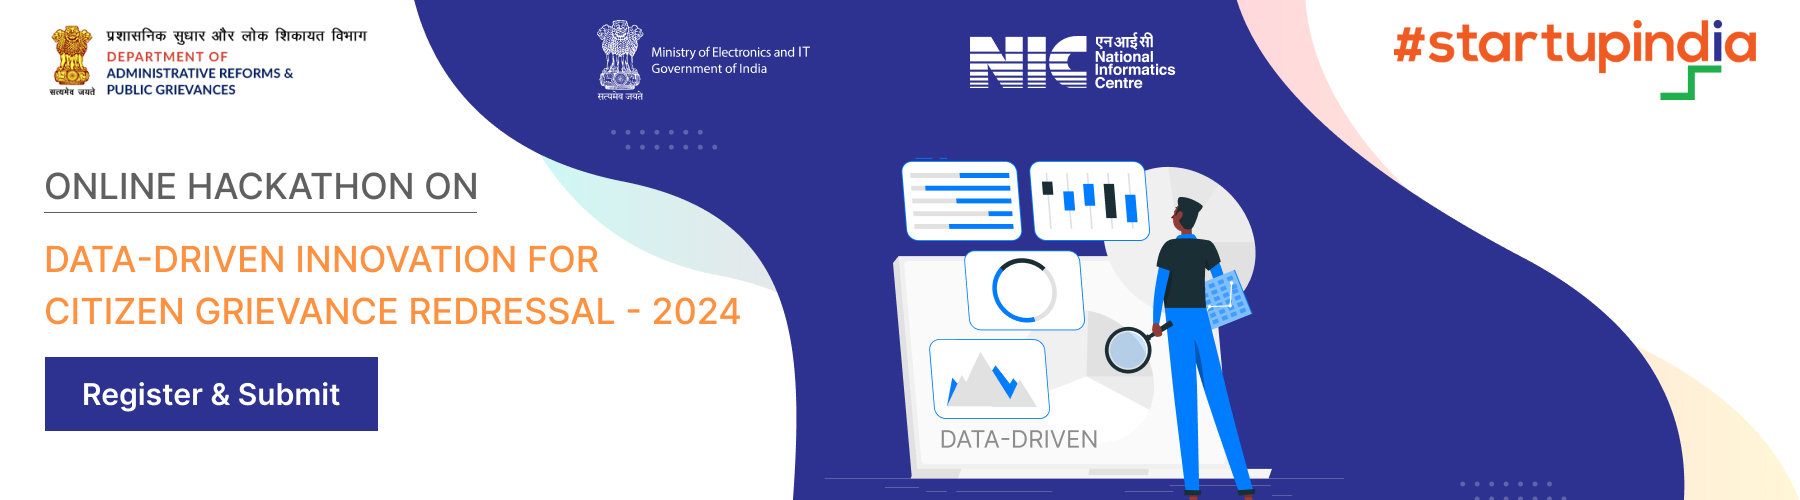 नागरिक शिकायत निवारण-2024 के लिए डेटा-ड्रिवन इनोवेशन पर ऑनलाइन हैकाथॉन